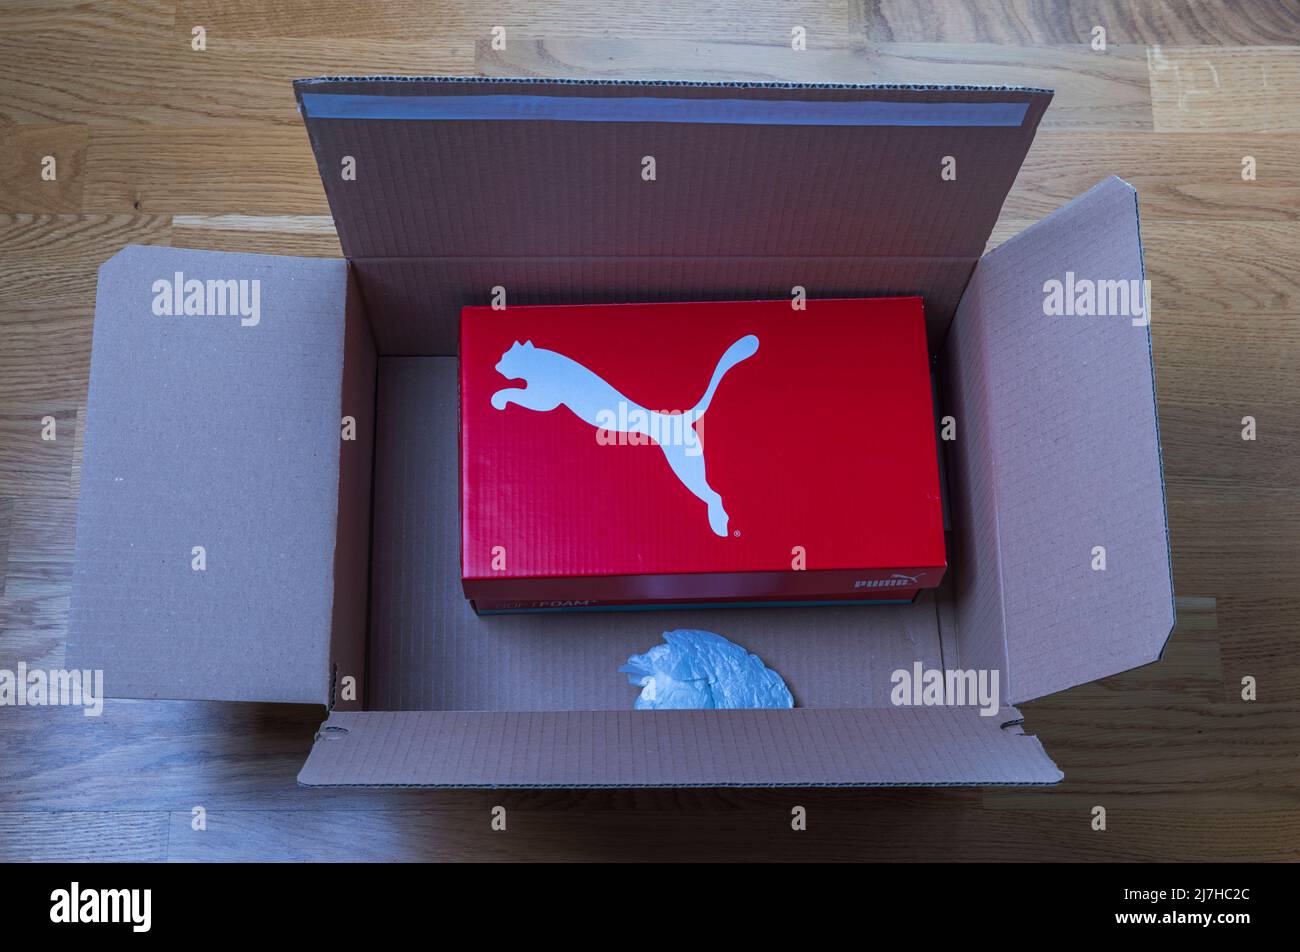 Primo piano della scatola di consegna a domicilio ricevuta di scarpe Puma. Svezia. Foto Stock